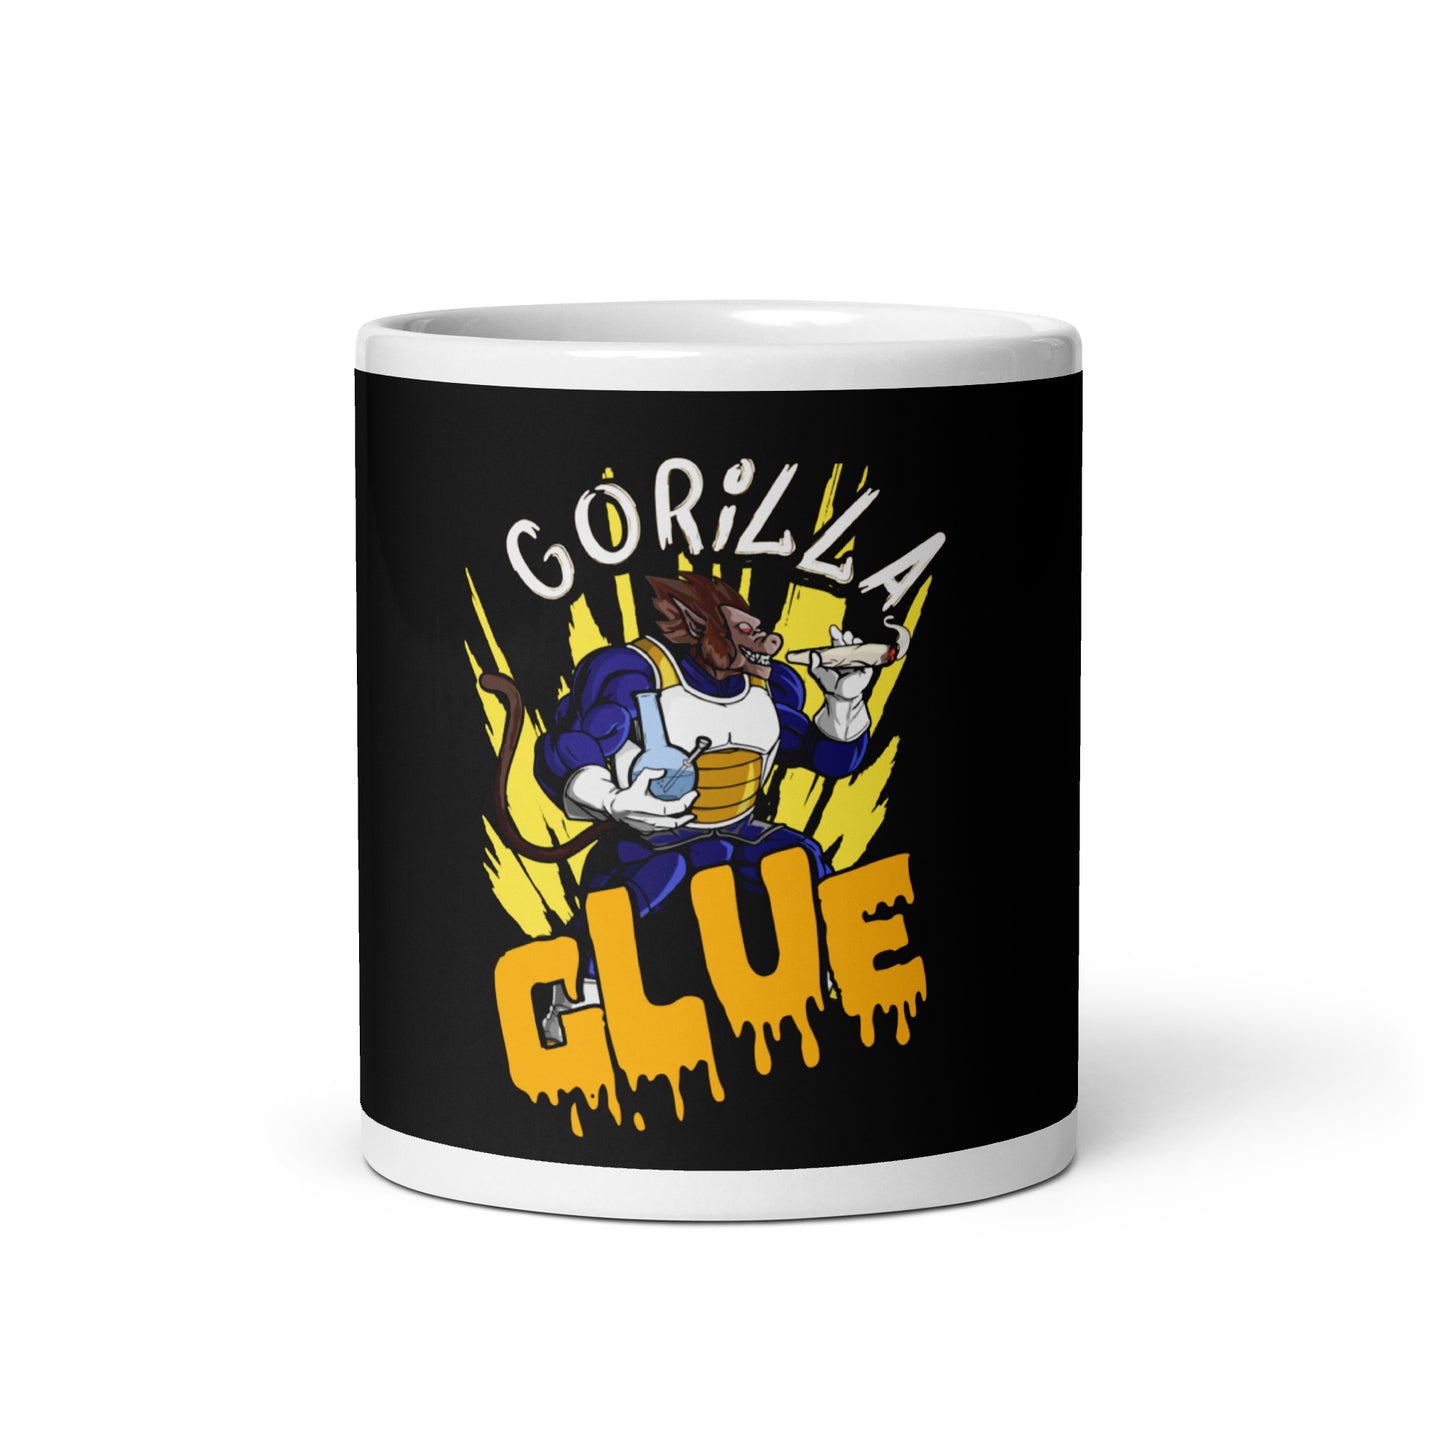 "Gorilla Glue DBZ" mug